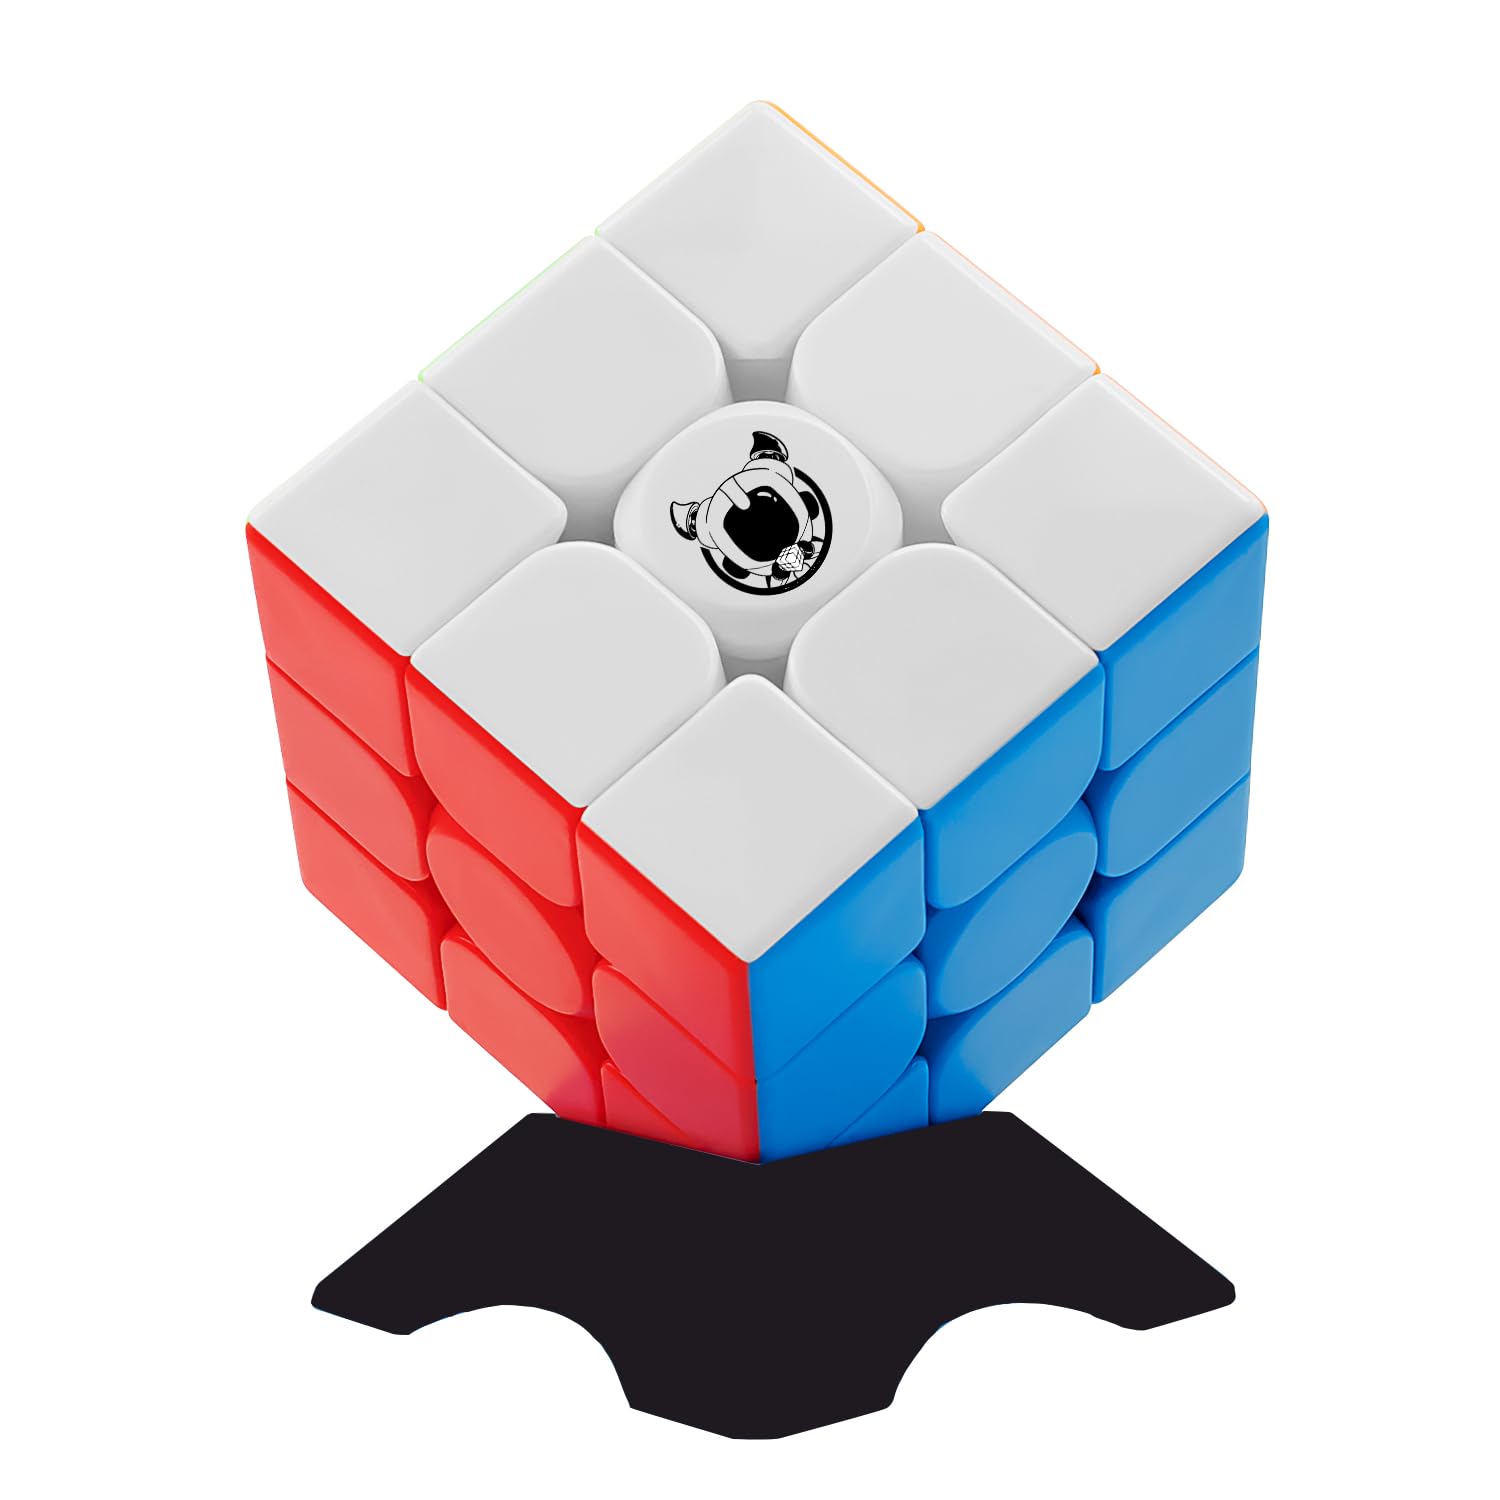 マジックキューブ 競技版 3 3 魔方 プロ向け 回転スムーズ 安定感 知育玩具 Magic Cube ステッカーレス 子供 ギフト クリスマス プレゼント